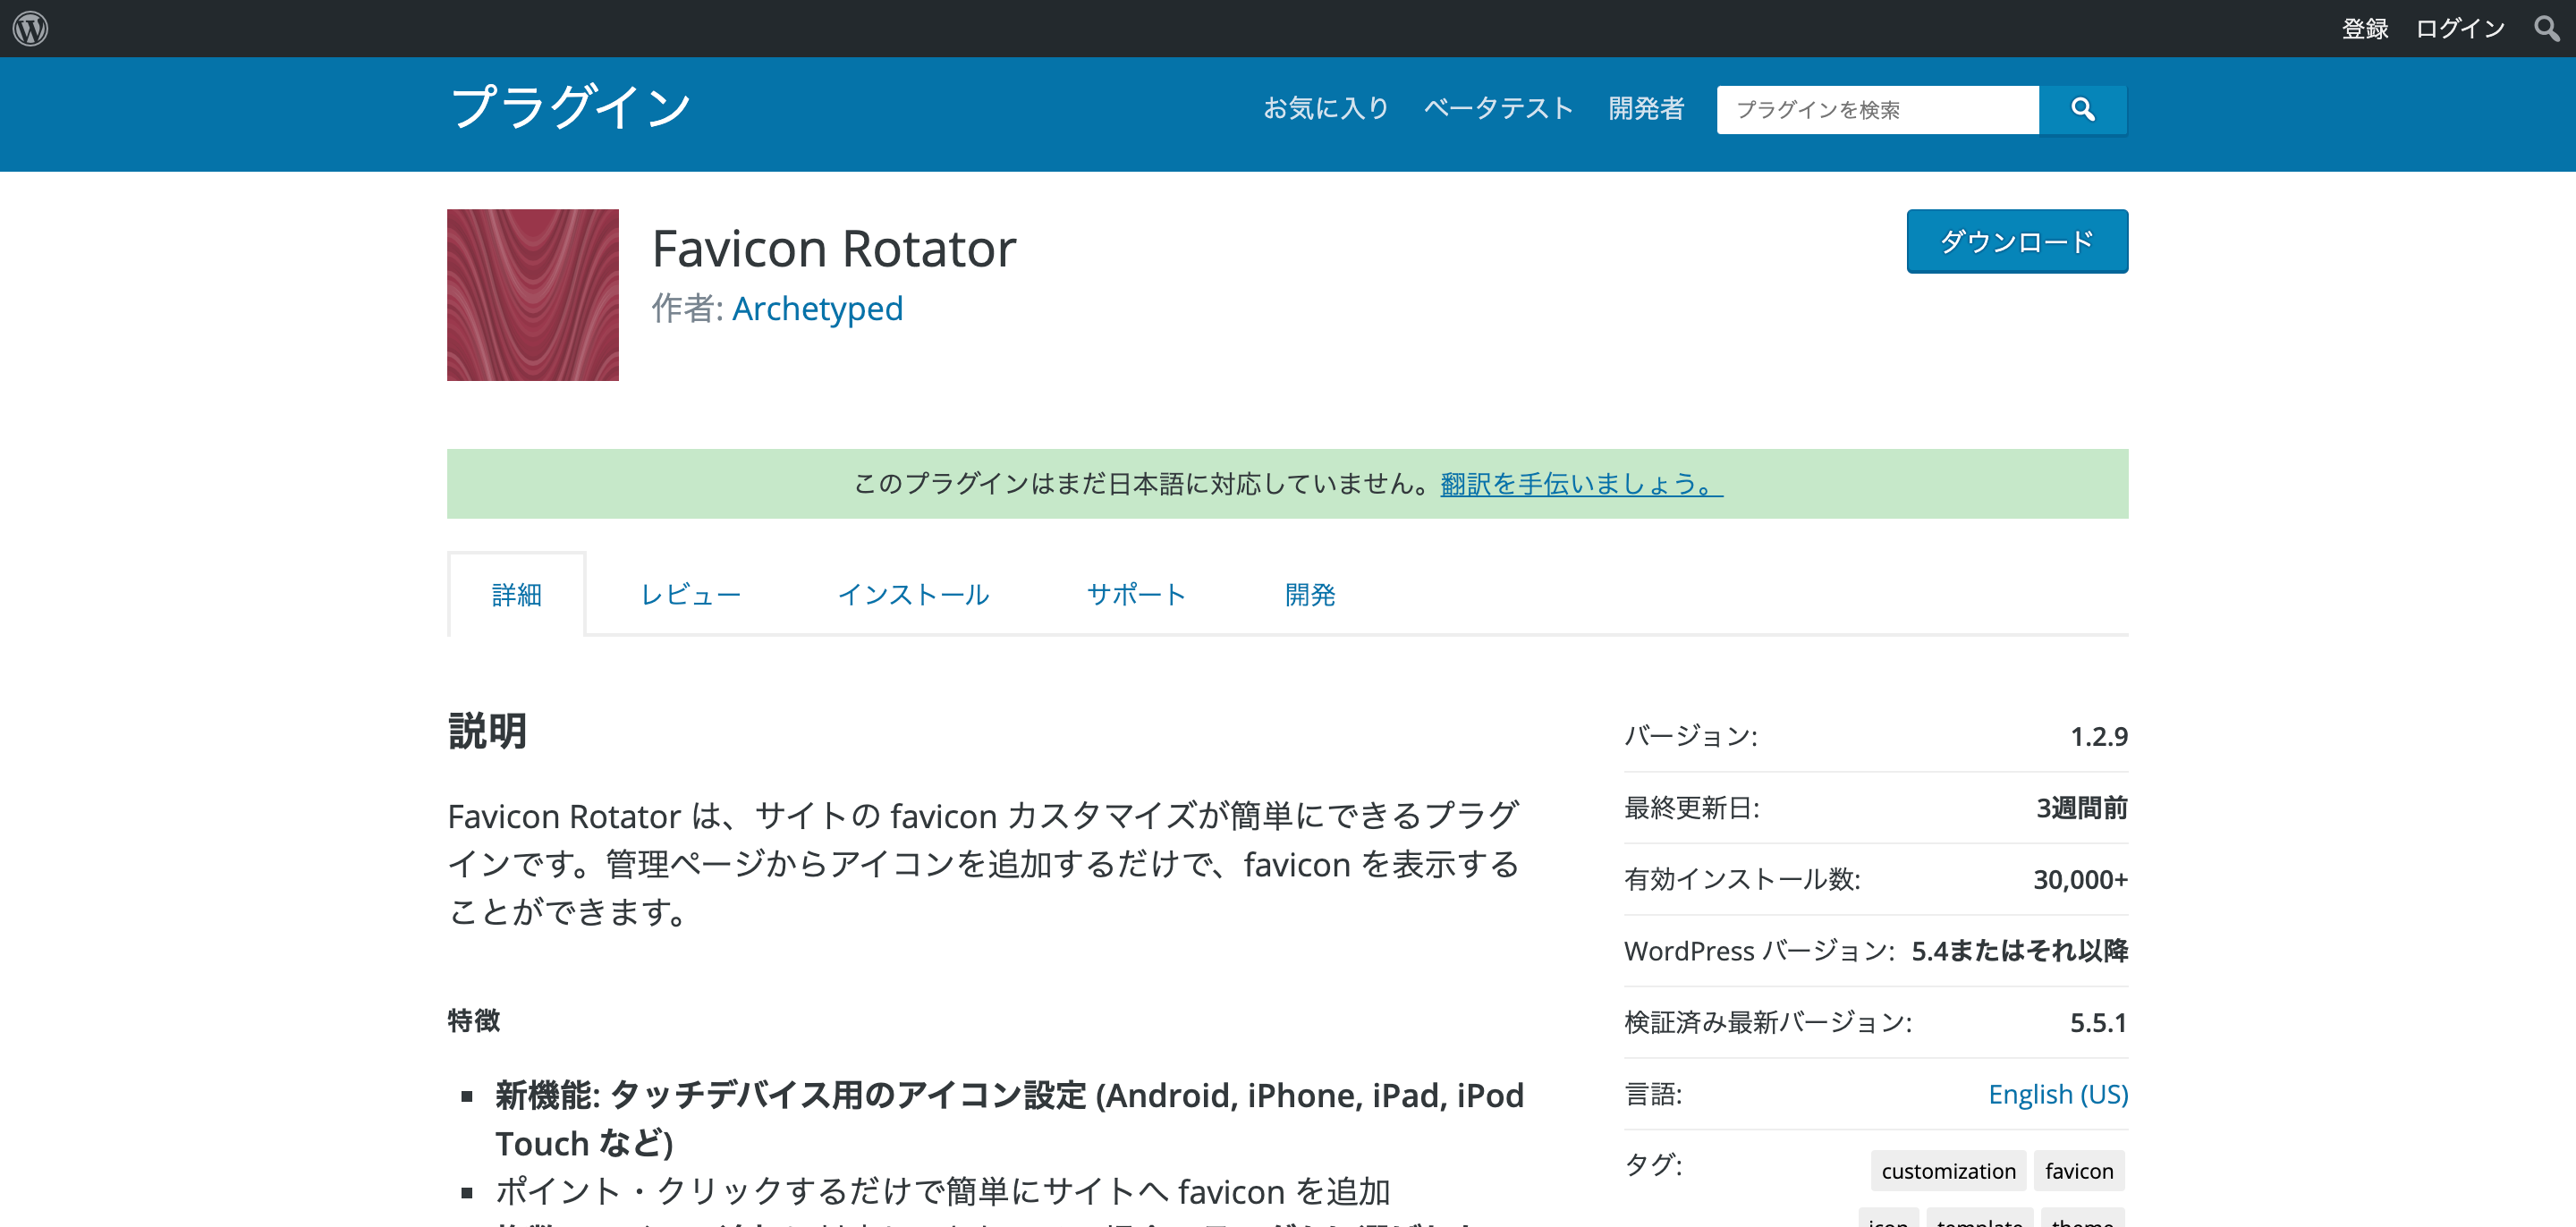 Favicon Rotator